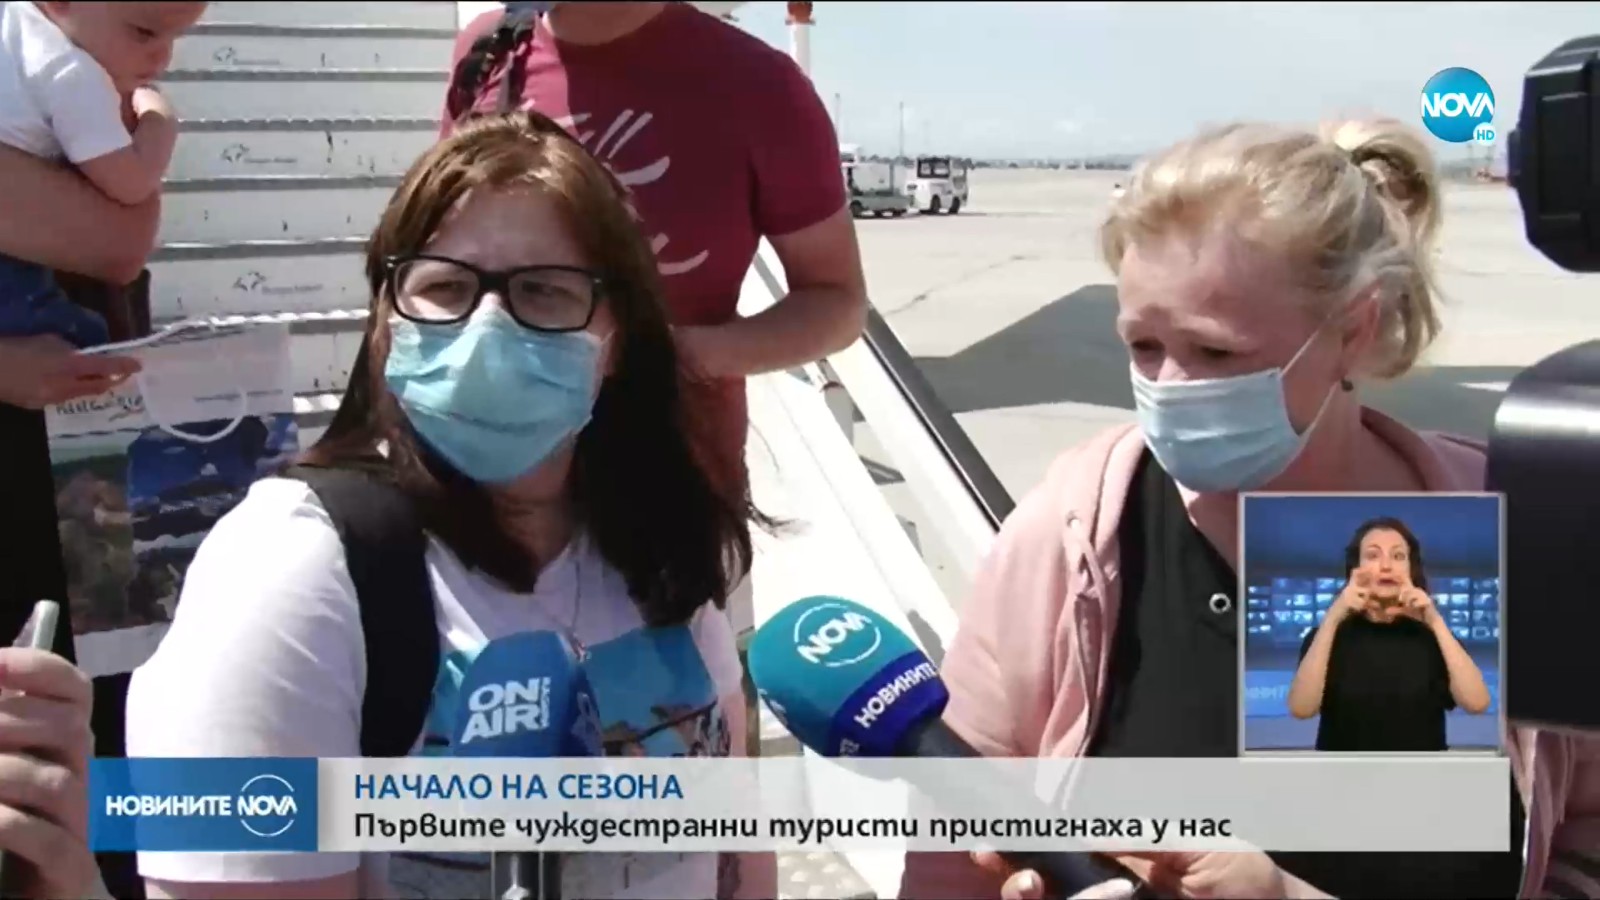 Bulgaarse tv live bij de aankomst van eerste Corendon-vlucht